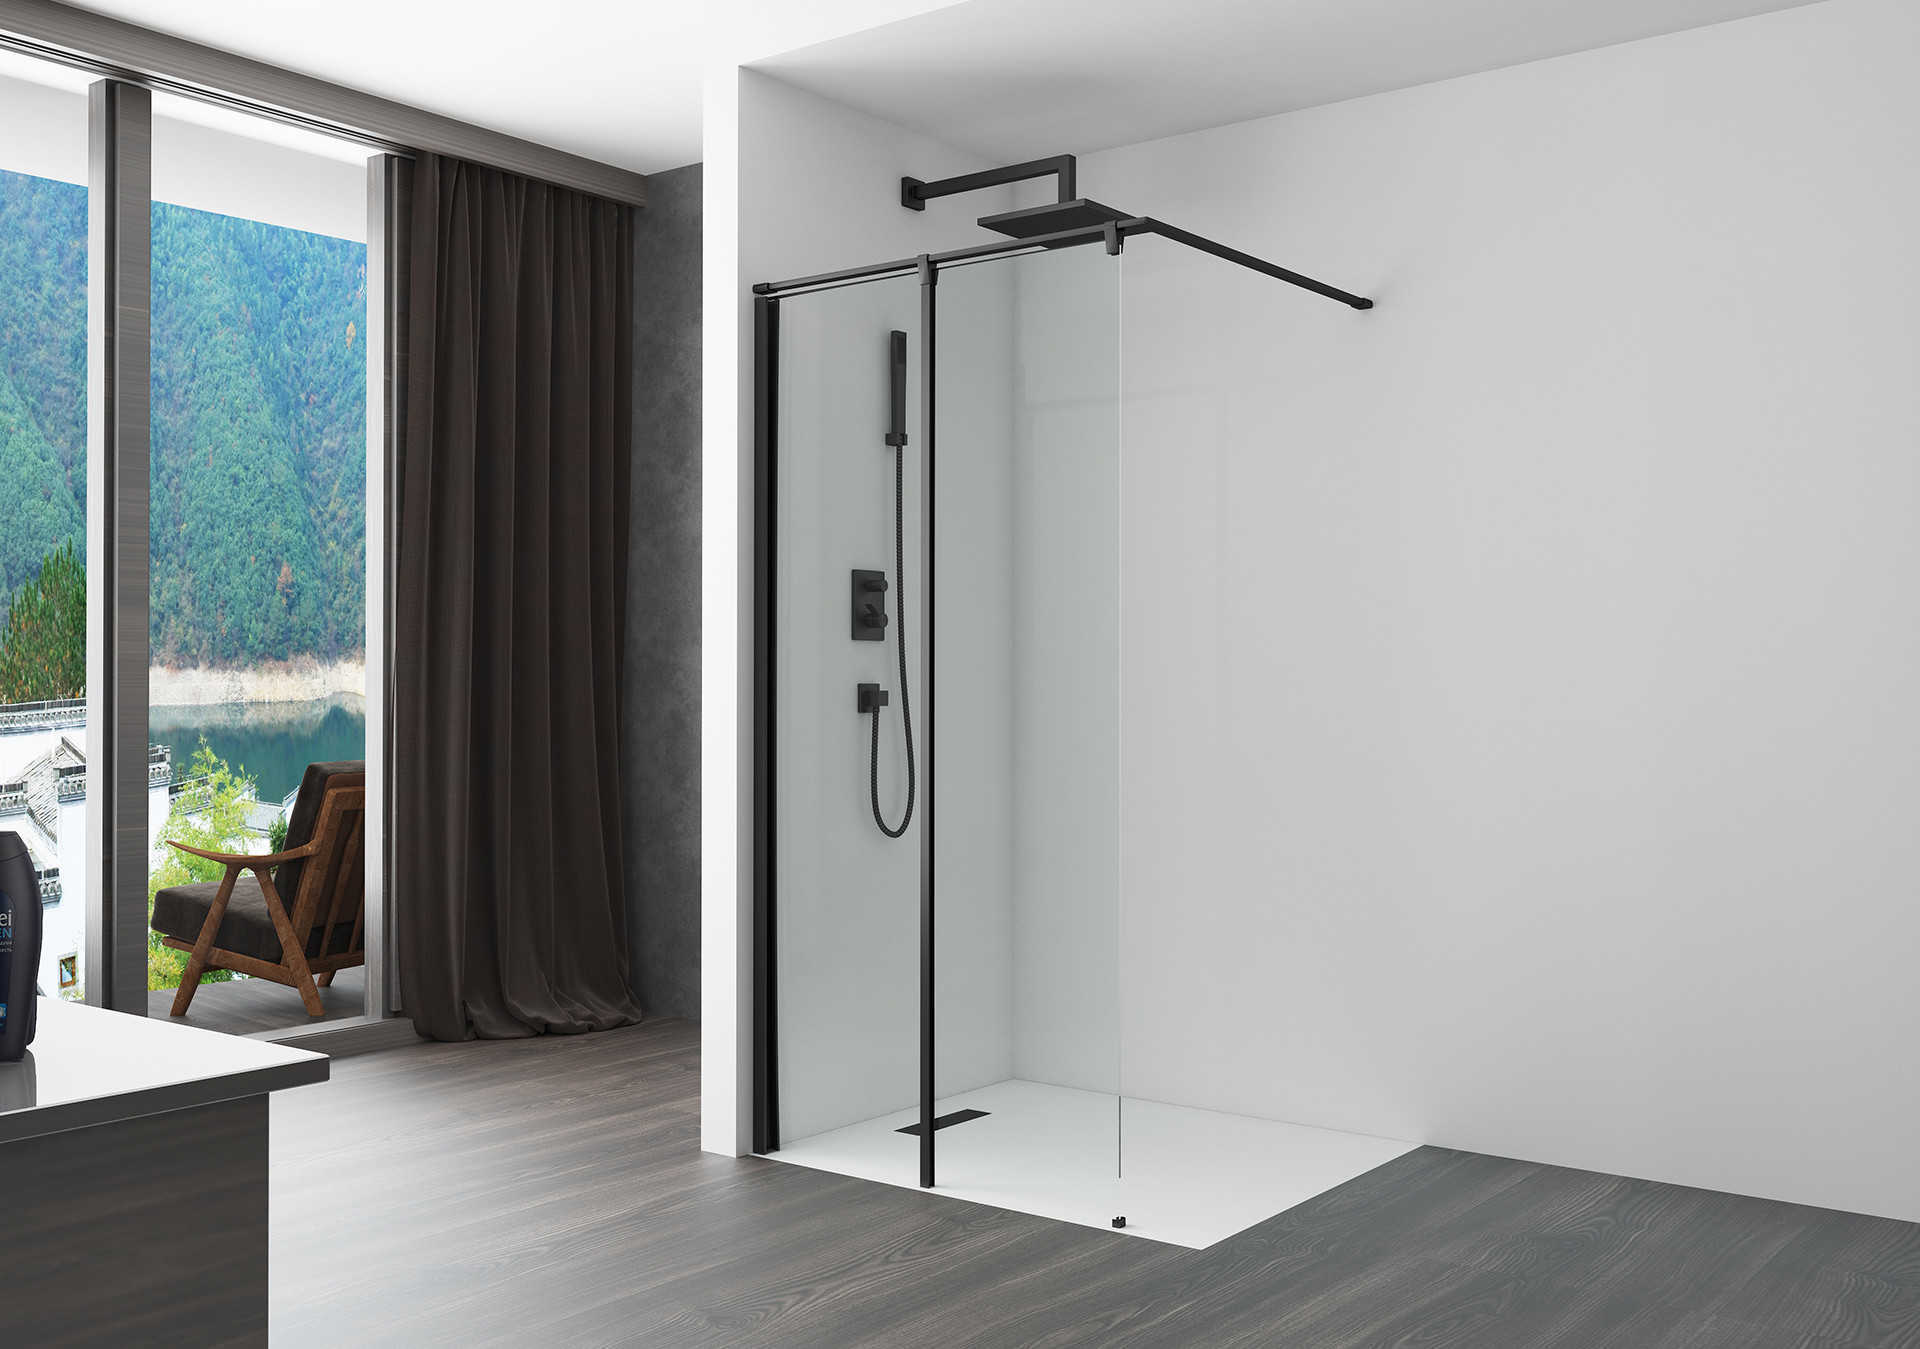 Consejos para la cabina de ducha a ras de suelo: cómo conseguir la cabina de ducha adecuada para su baño